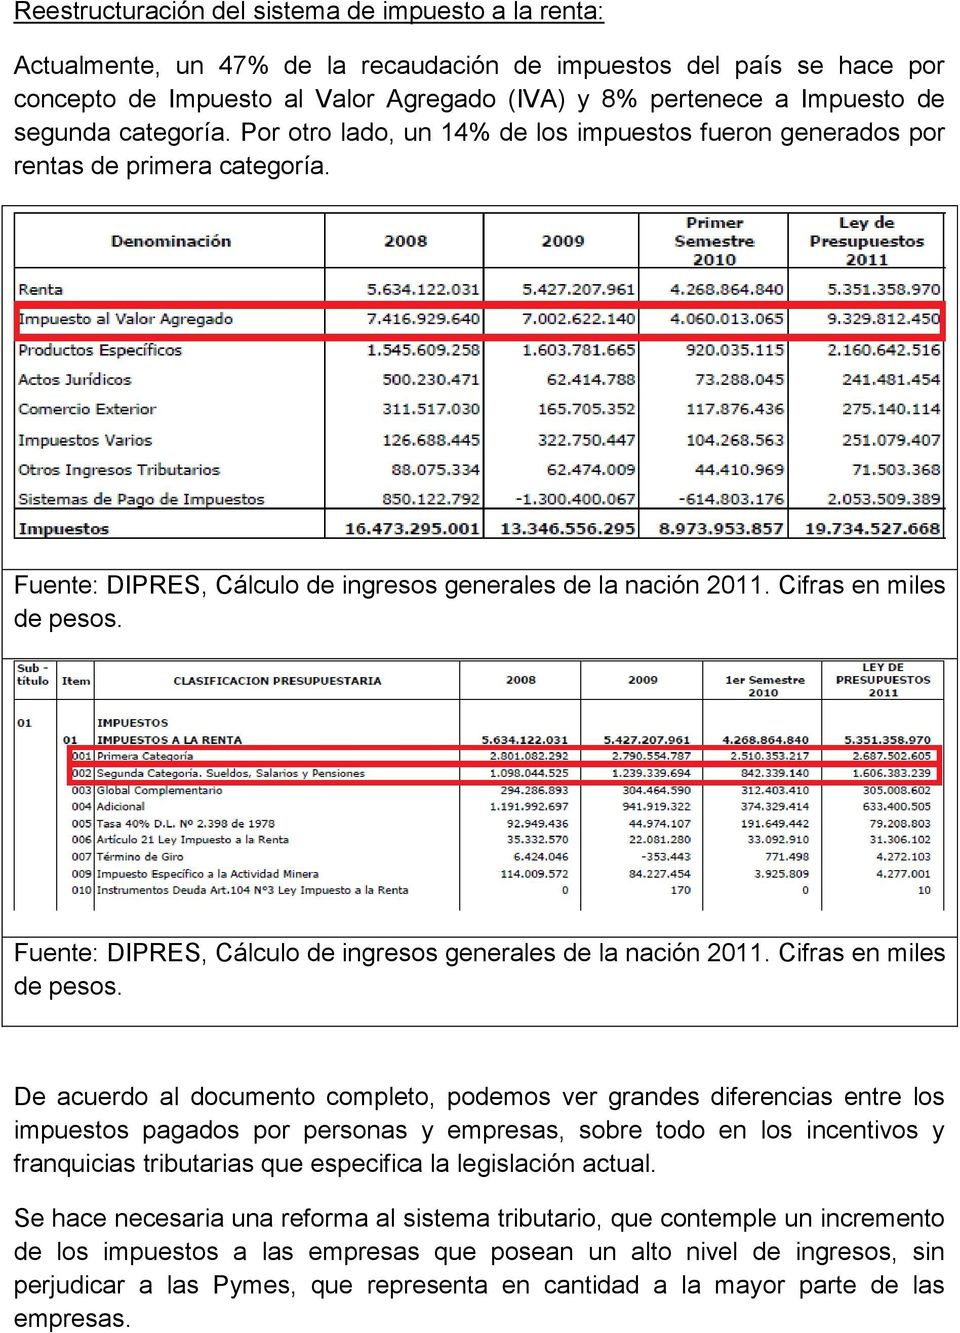 Fuente: DIPRES, Cálculo de ingresos generales de la nación 2011. Cifras en miles de pesos.